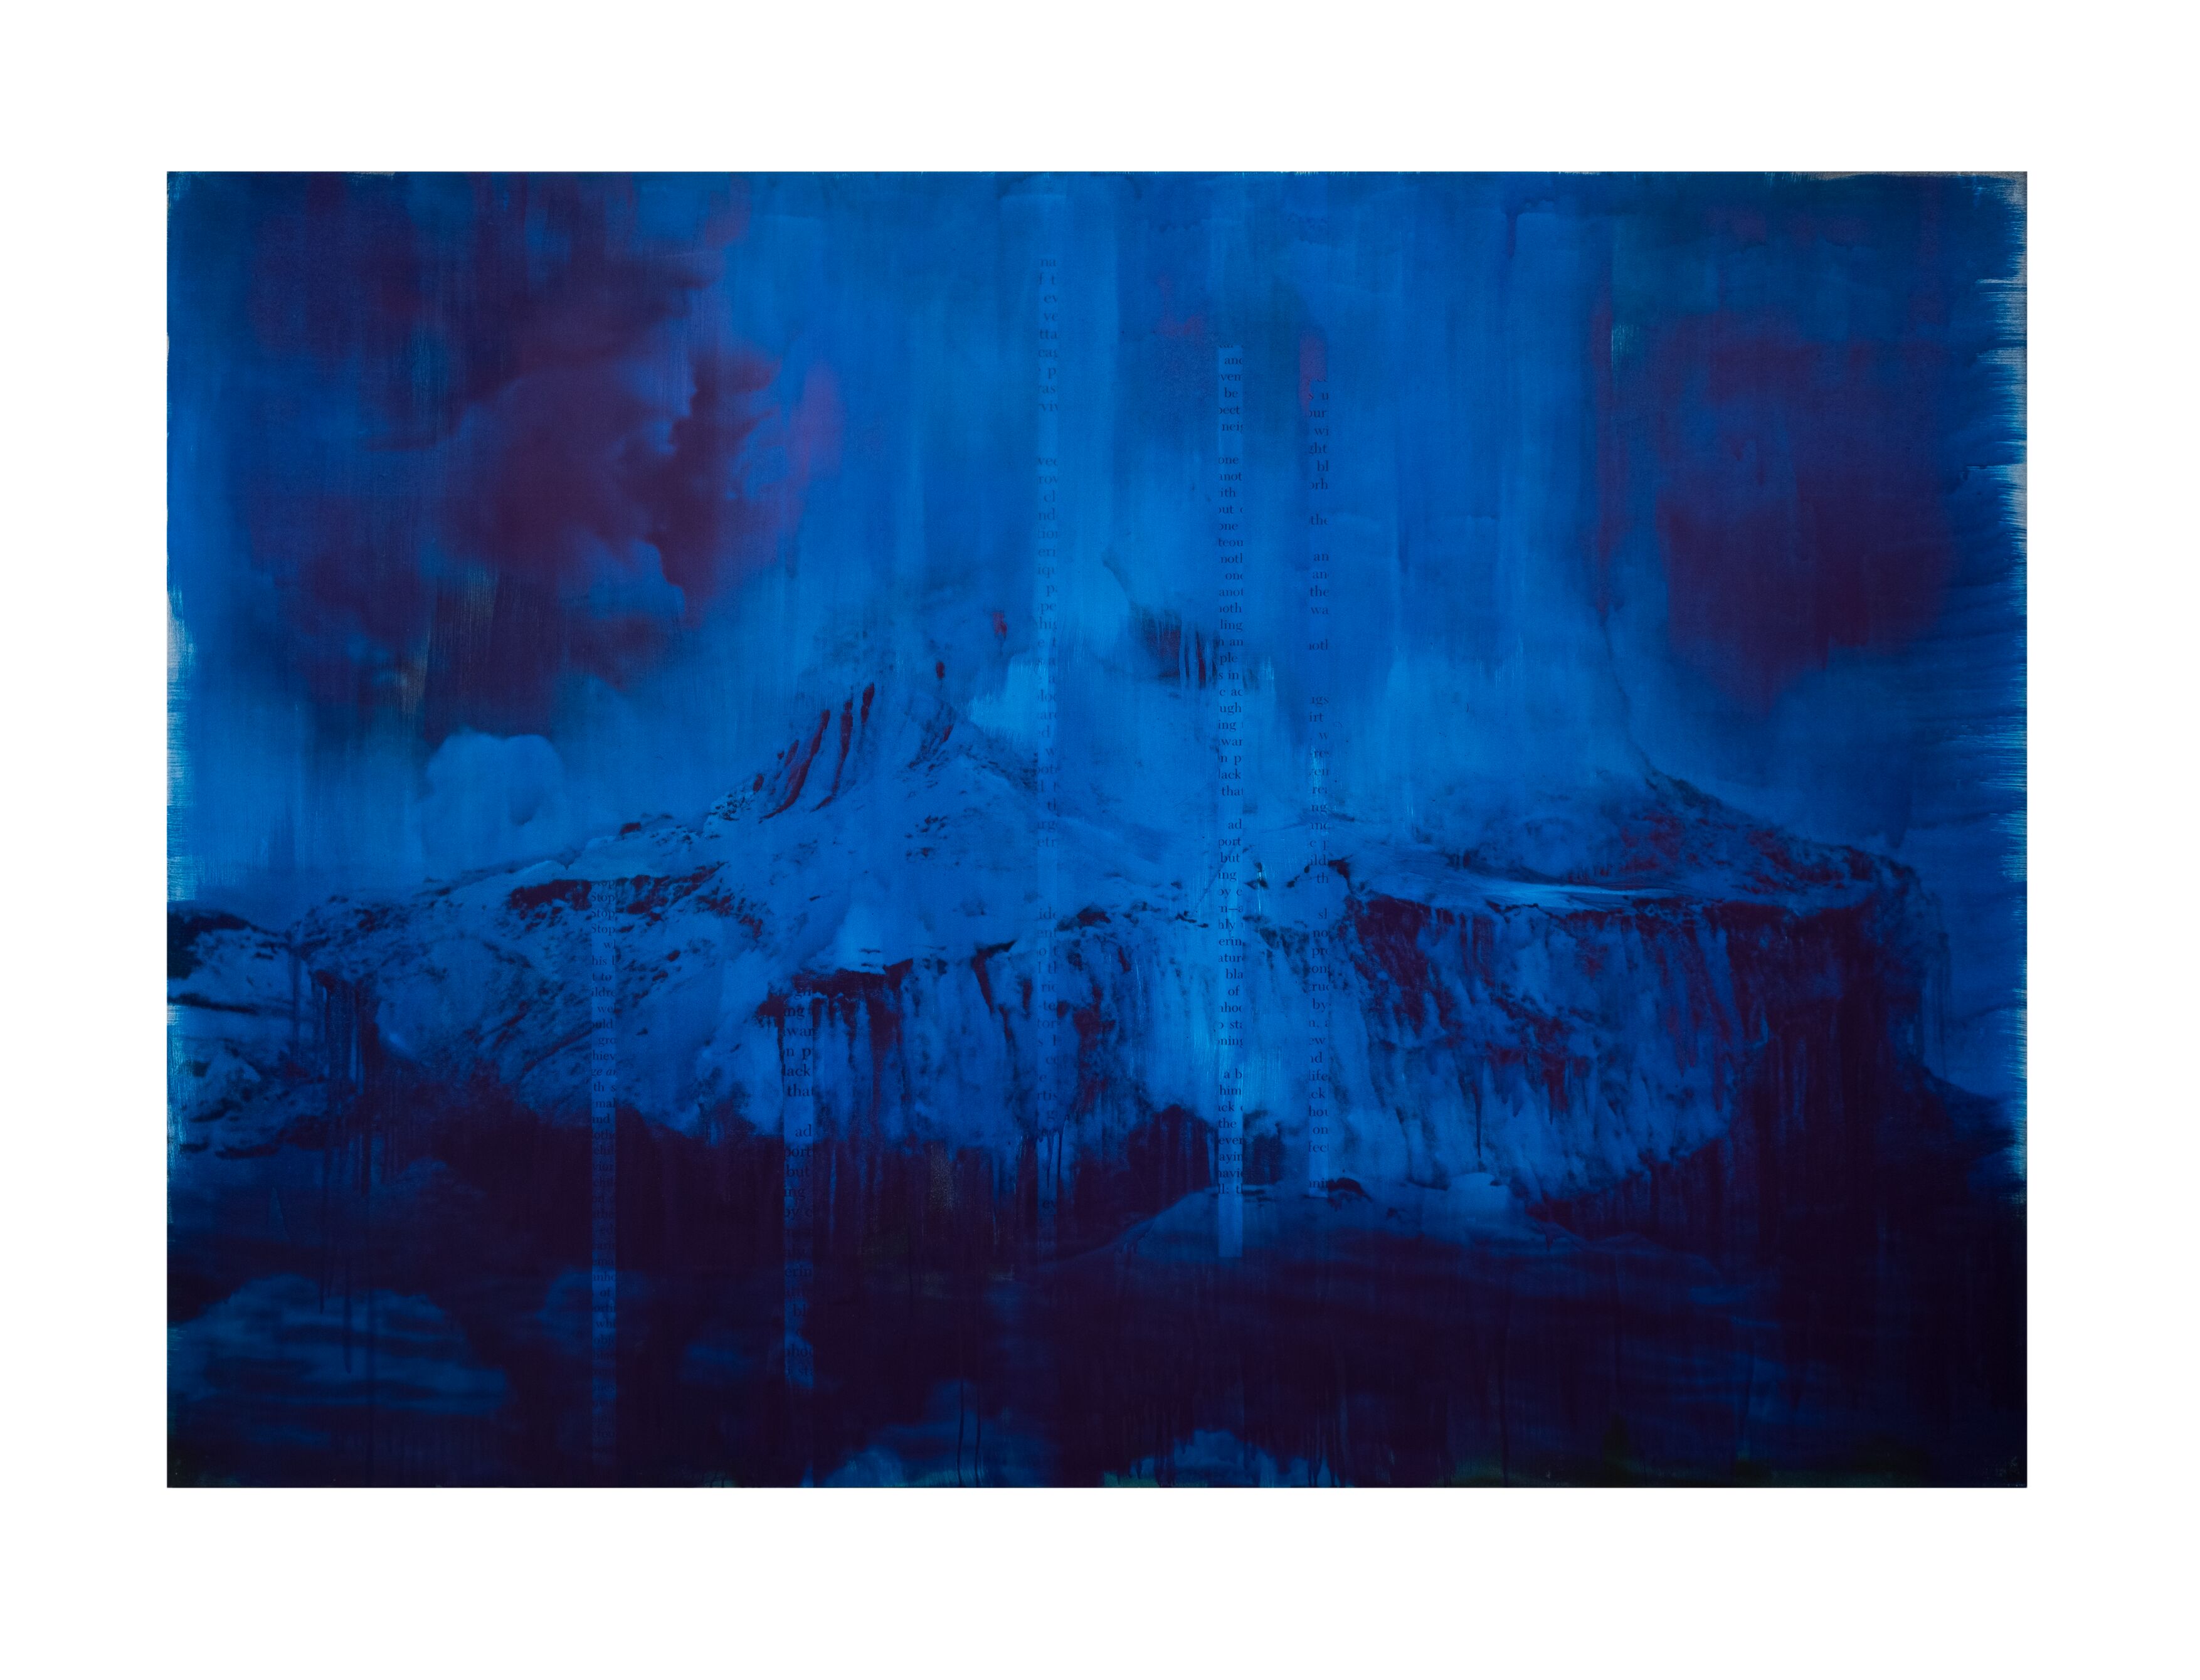 Blue Dark, 2018 by Lorna Simpson | Ocula